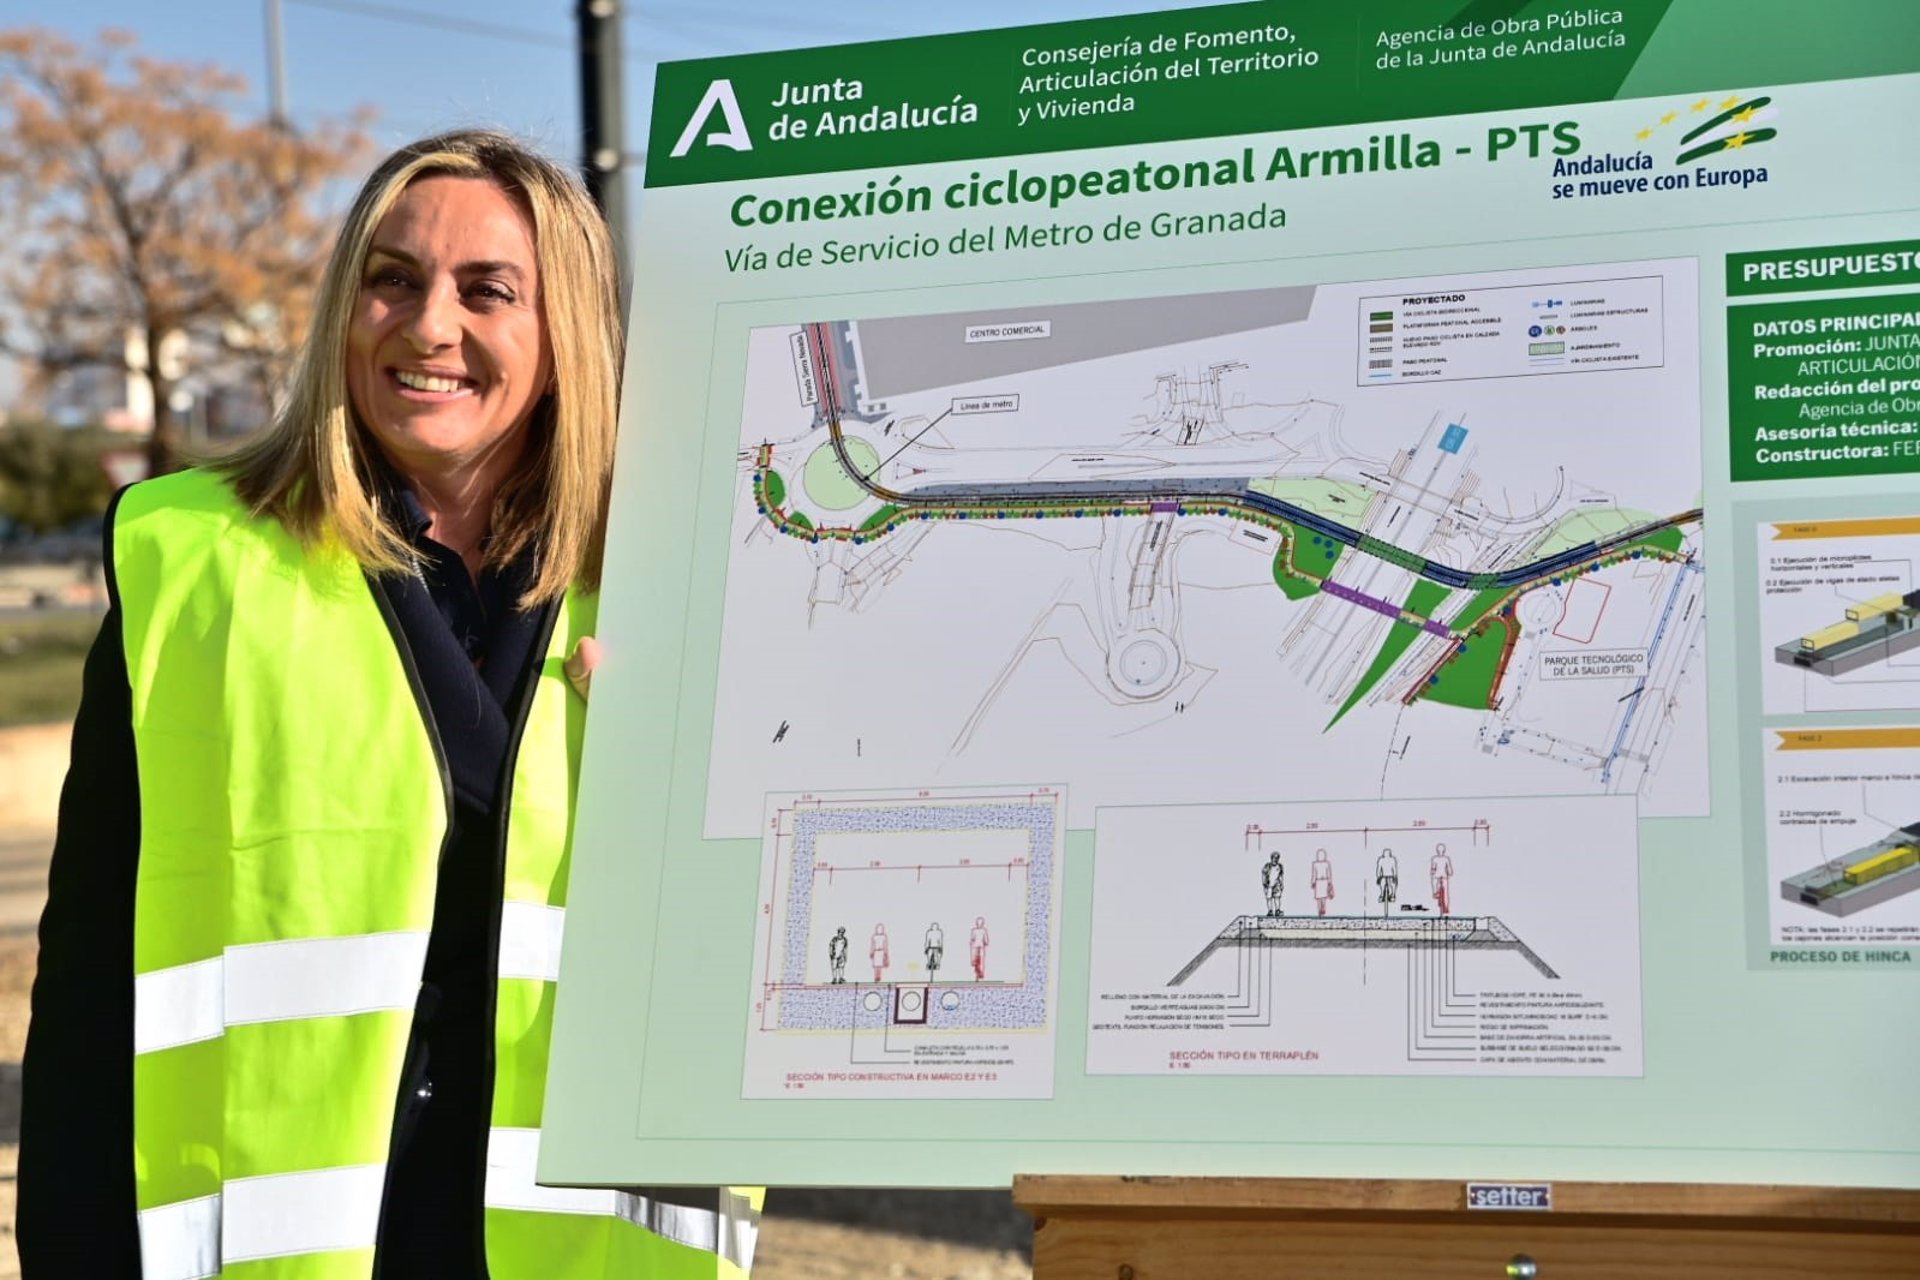 La Junta comienza las obras de la conexión ciclopeatonal entre Armilla y el PTS en Granada